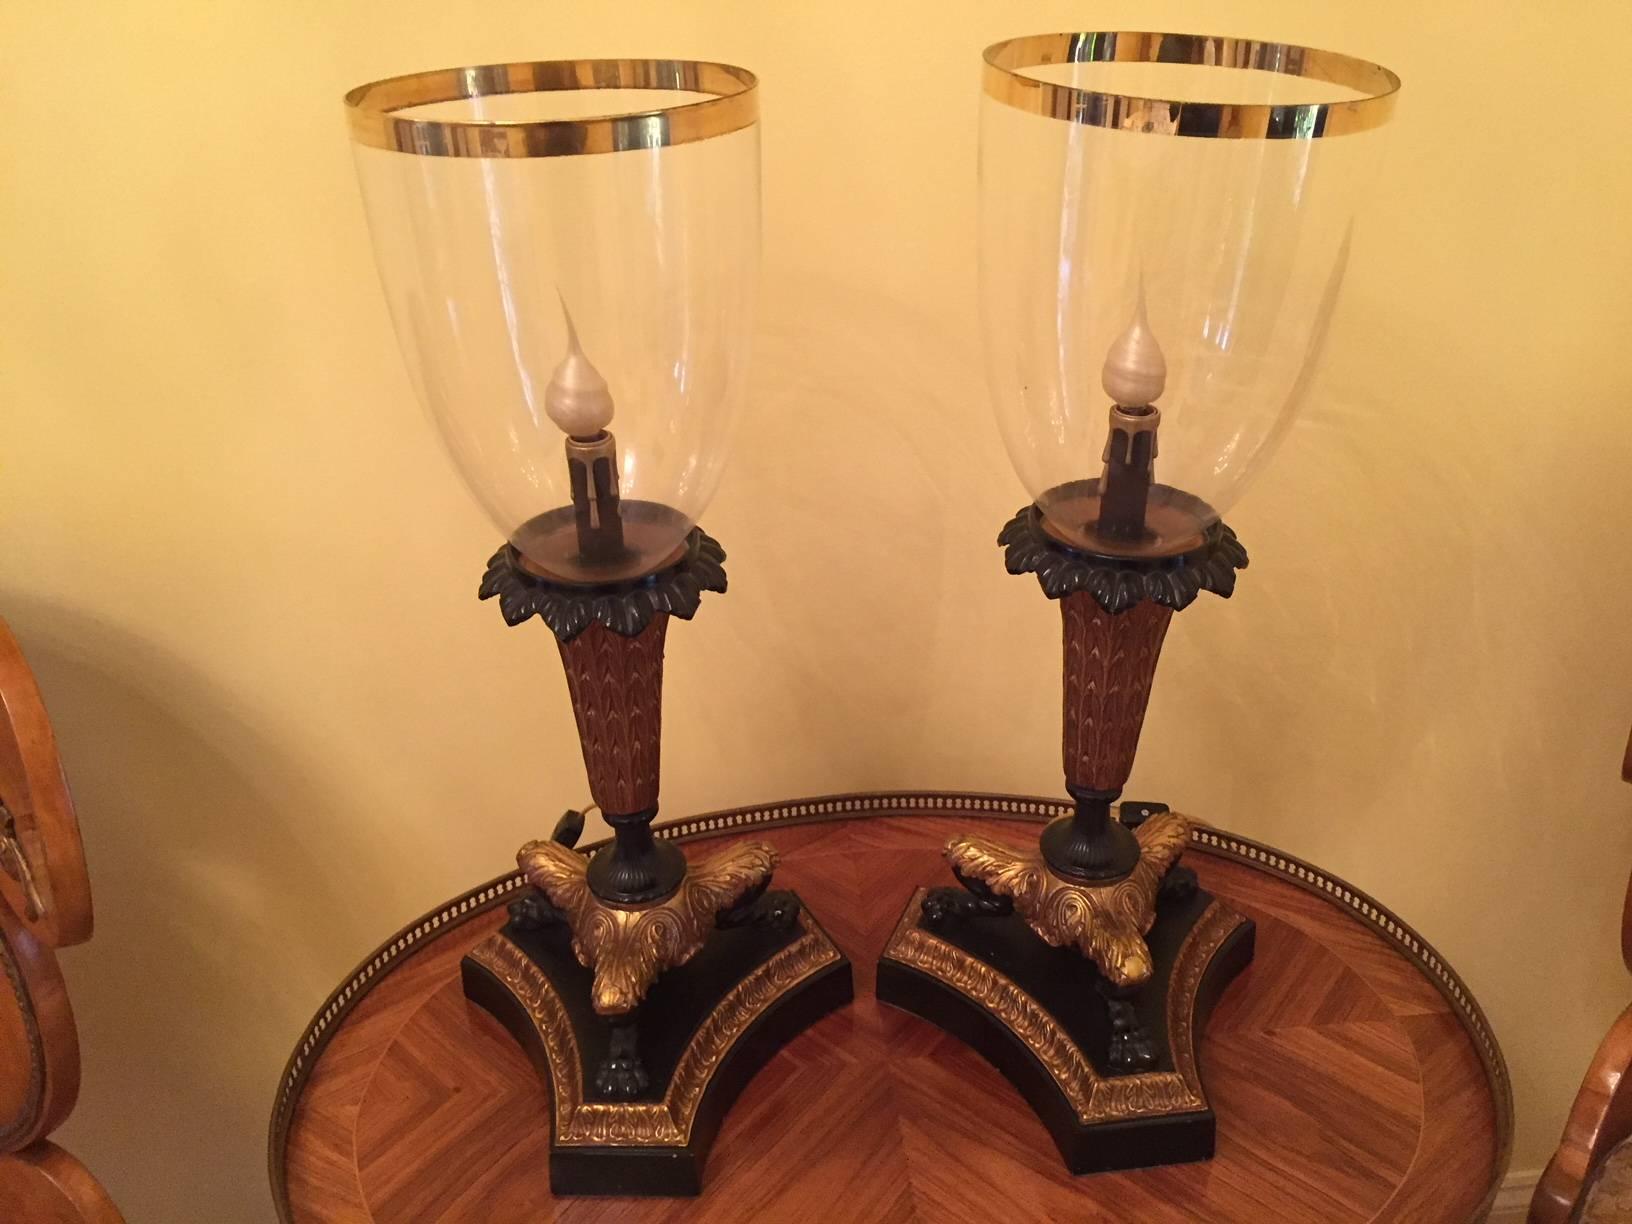 Lampes chandeliers de style Charles X avec des abat-jour en verre à garniture dorée insérés dans les bases en bronze patiné et doré.